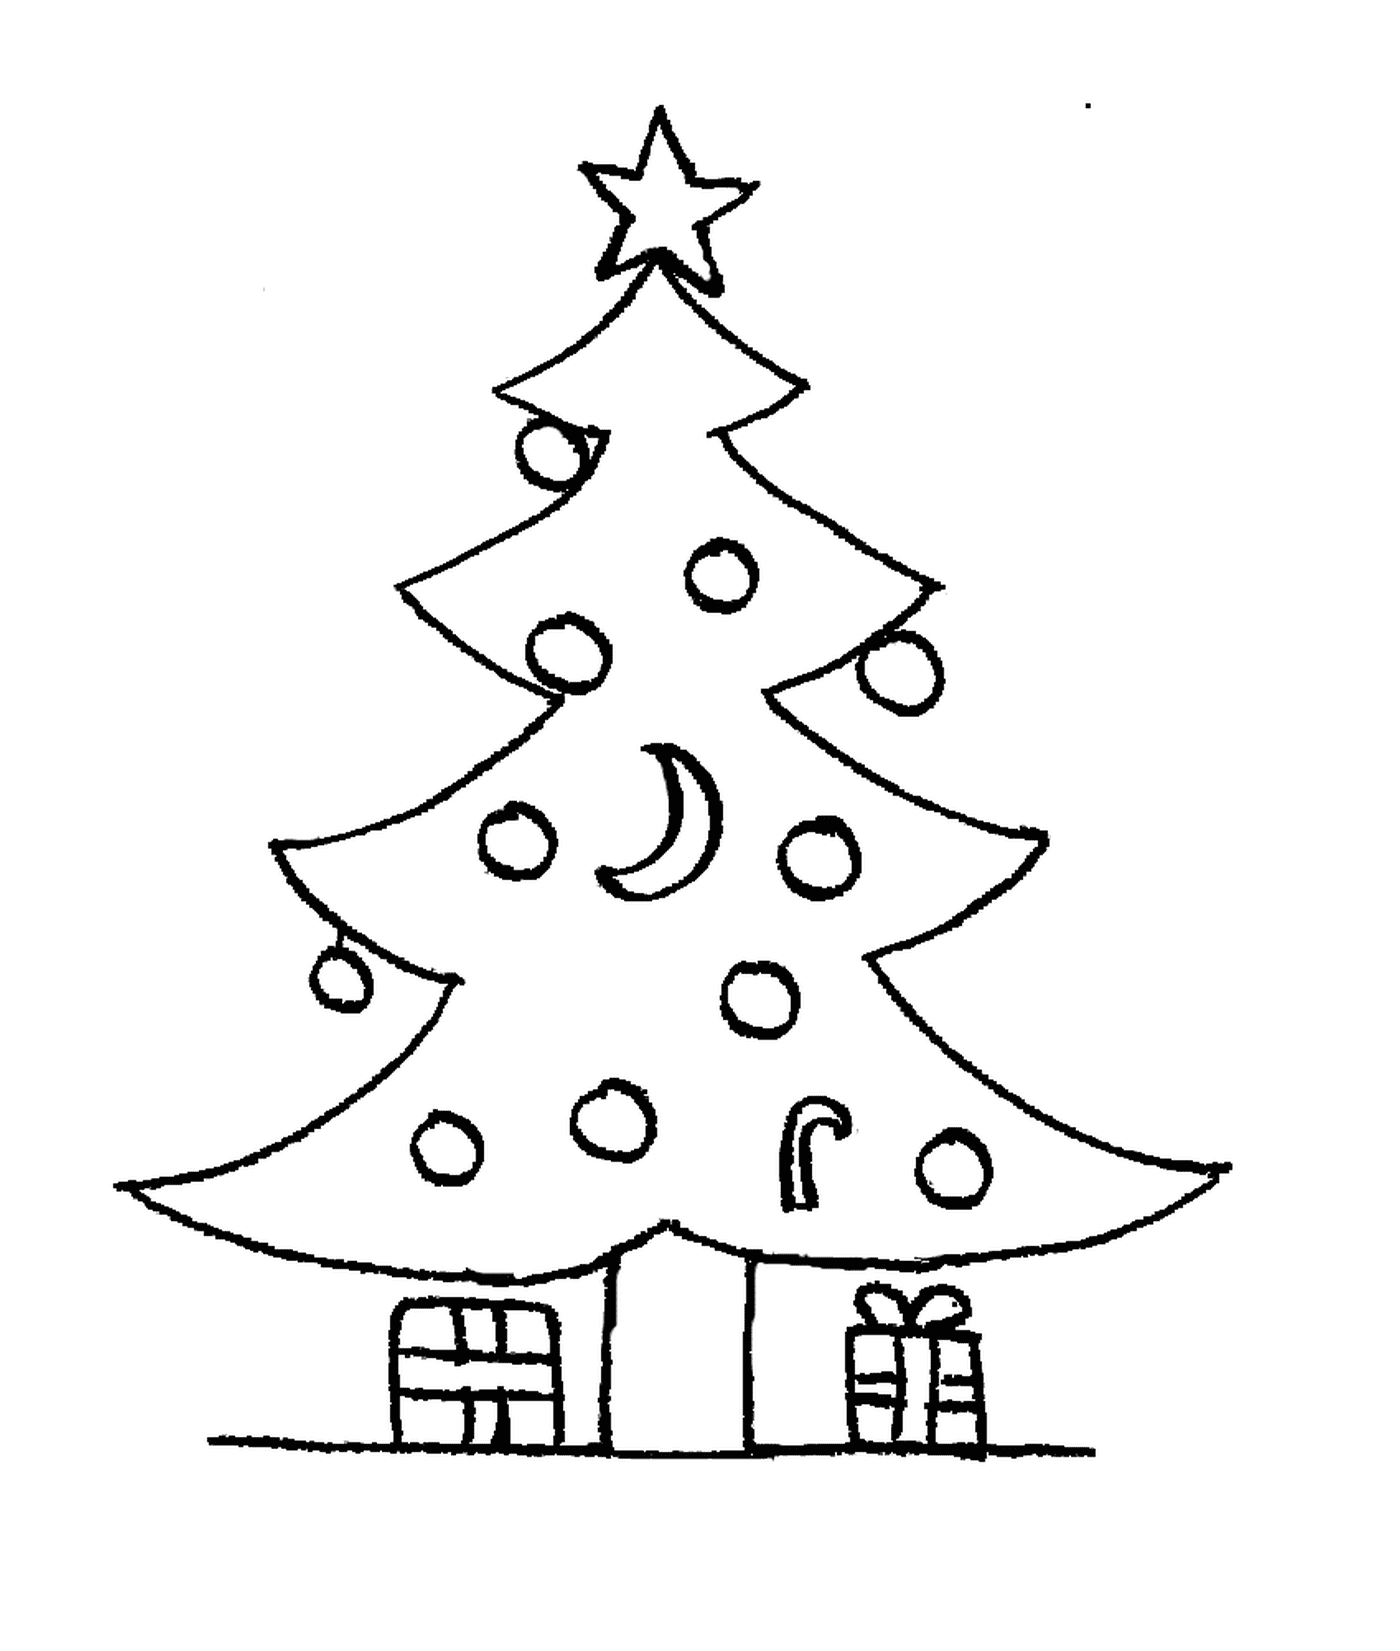  شجرة عيد الميلاد مع الهدايا في الطابق العلوي 